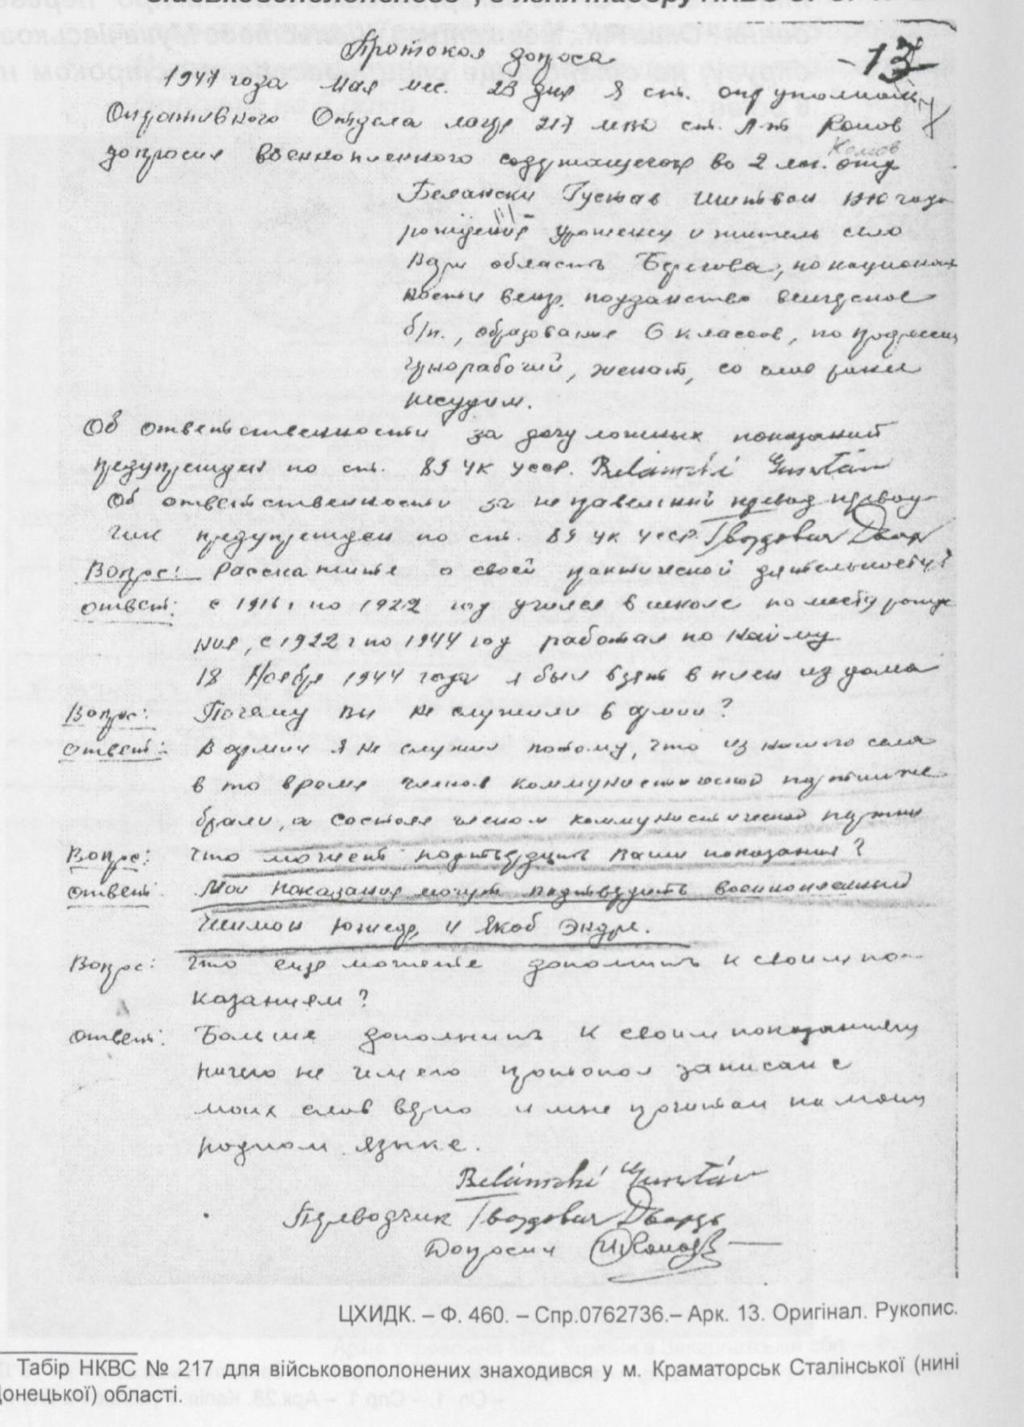 1947. május 23. Belánszki Gusztáv hadifogoly kihallgatási jegyzőkönyve a SZU Belügyi Népbiztosságának 217-es számú rabtáborában.